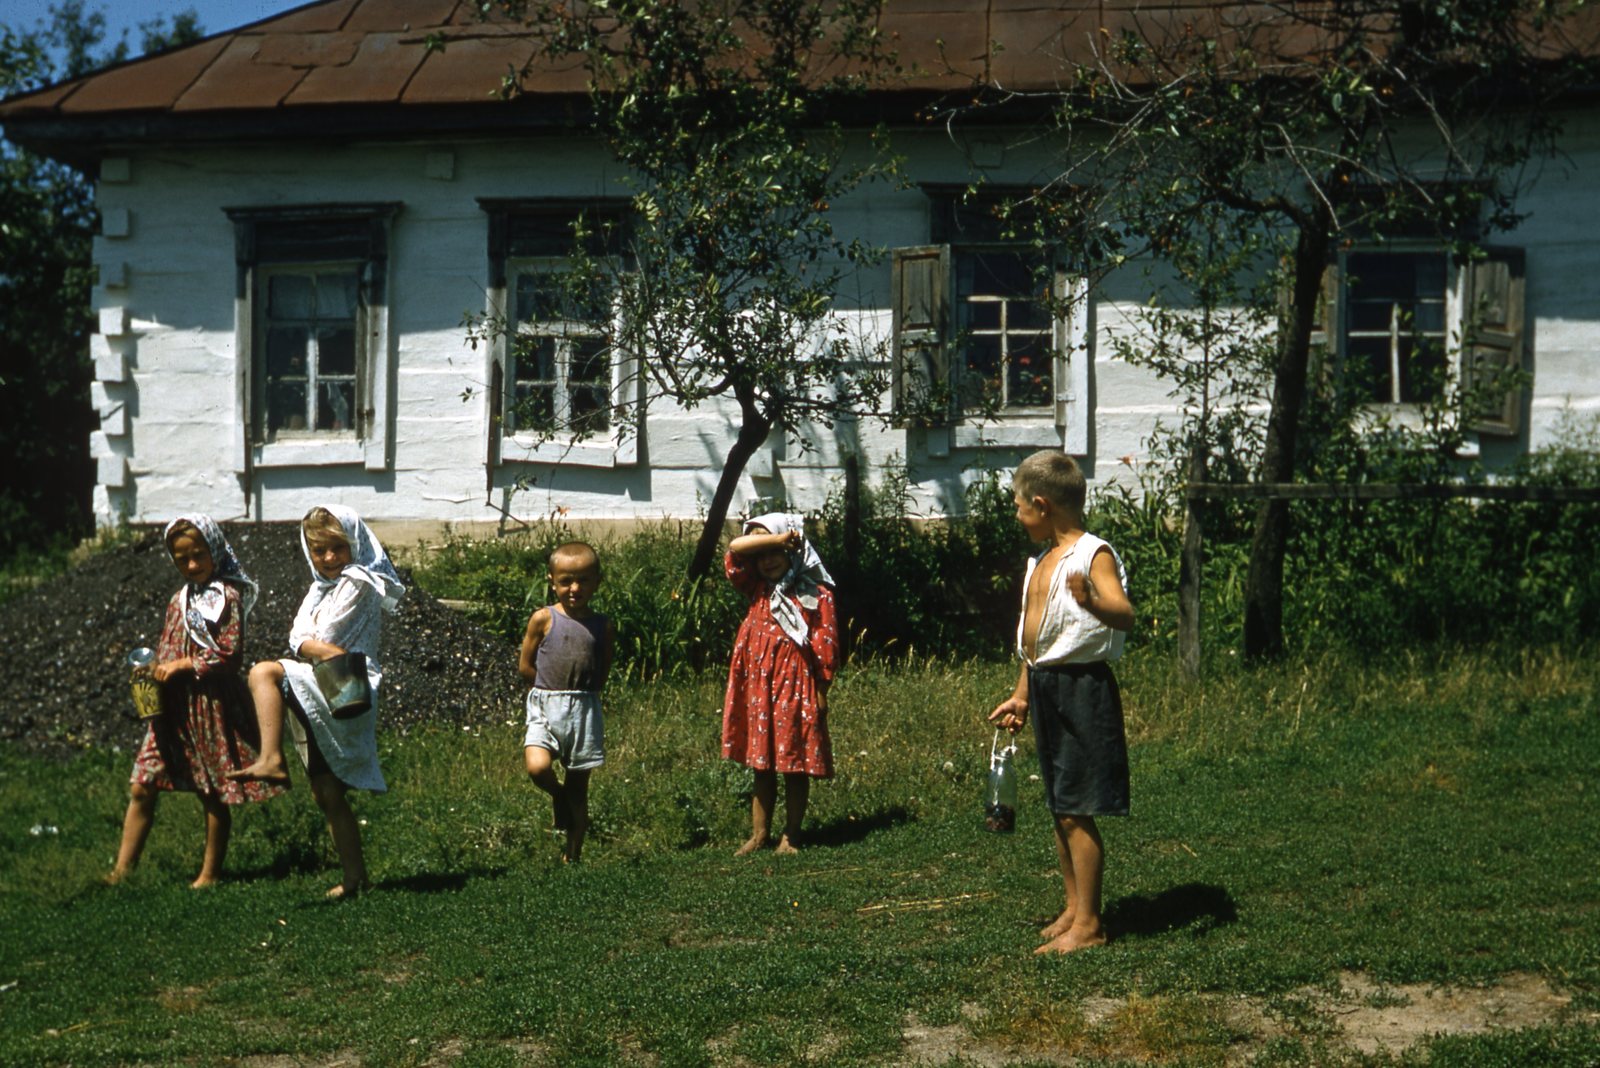 как изготавливали цветную фотографию дома 1970г фото